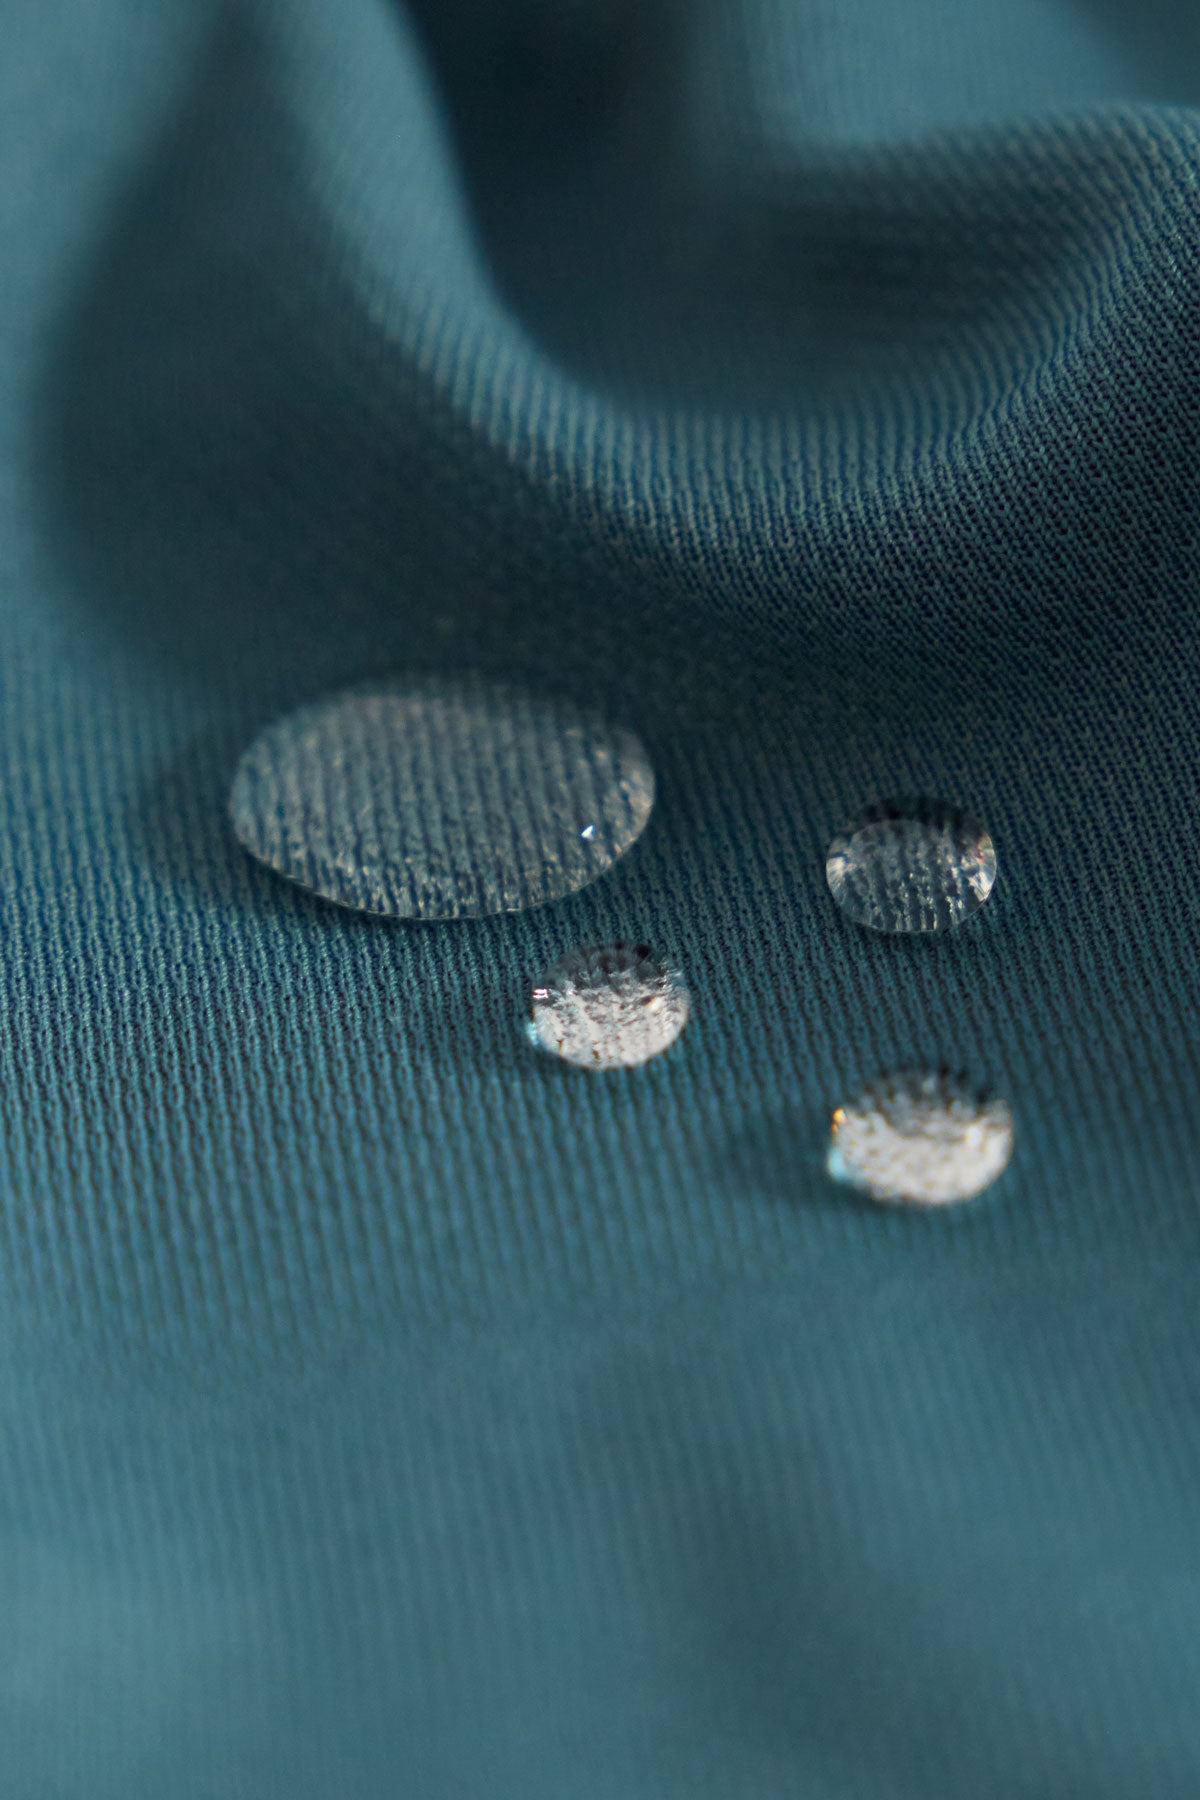 Camisa para mujer slim color azul neptuno, básica y versátil. Foto gotas